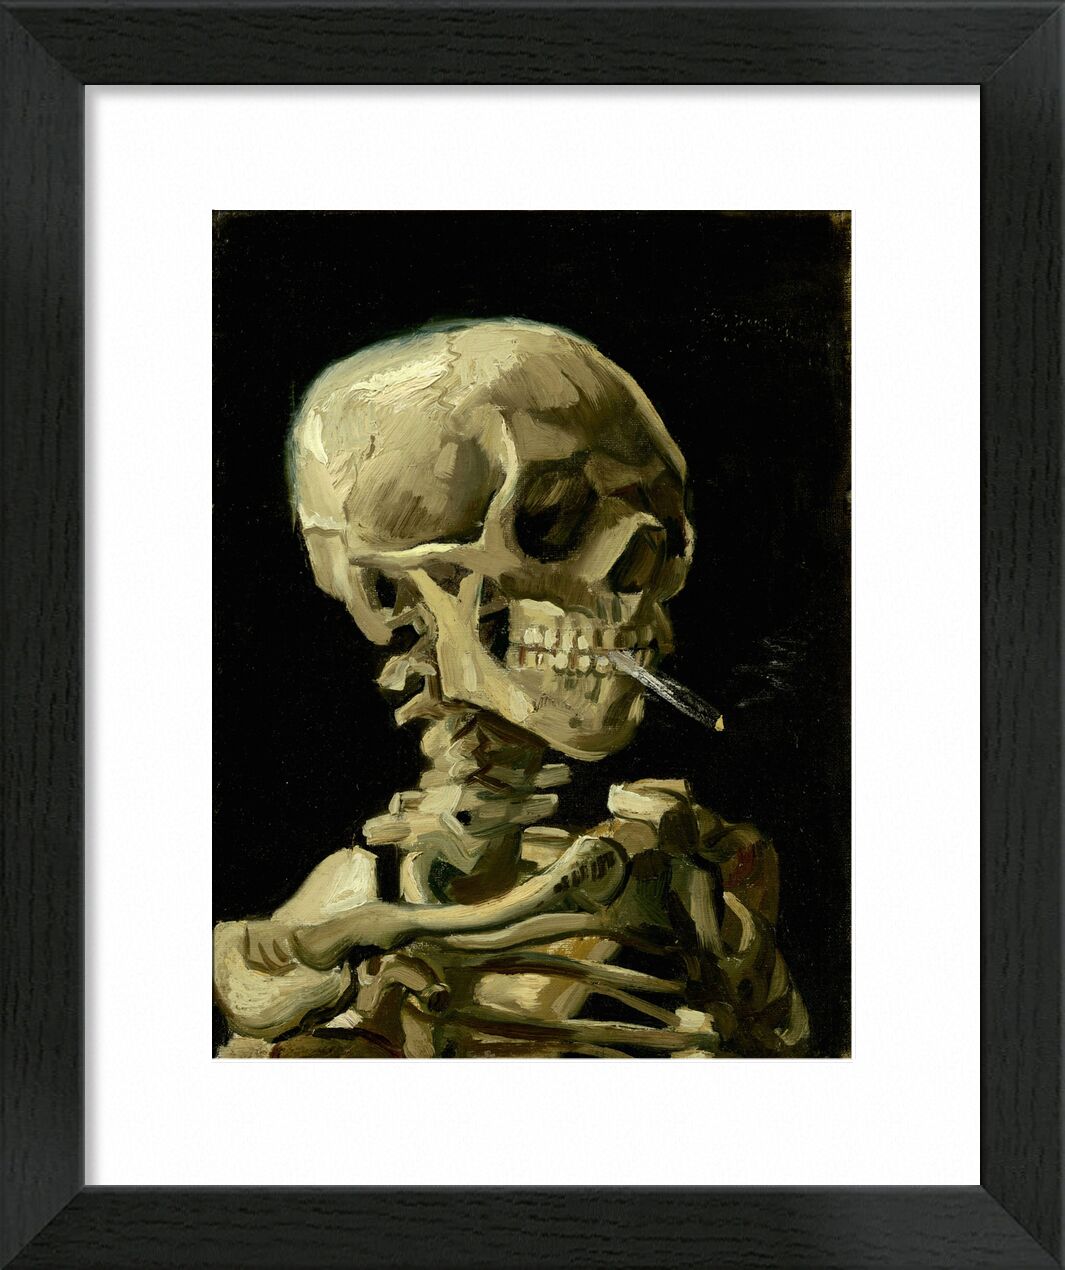 Head of a Skeleton with a Burning Cigarette - VINCENT VAN GOGH von Bildende Kunst, Prodi Art, schwarz, Rauch, Tod, Zigarette, Skelett, Eingeweide, VINCENT VAN GOGH, dunkel